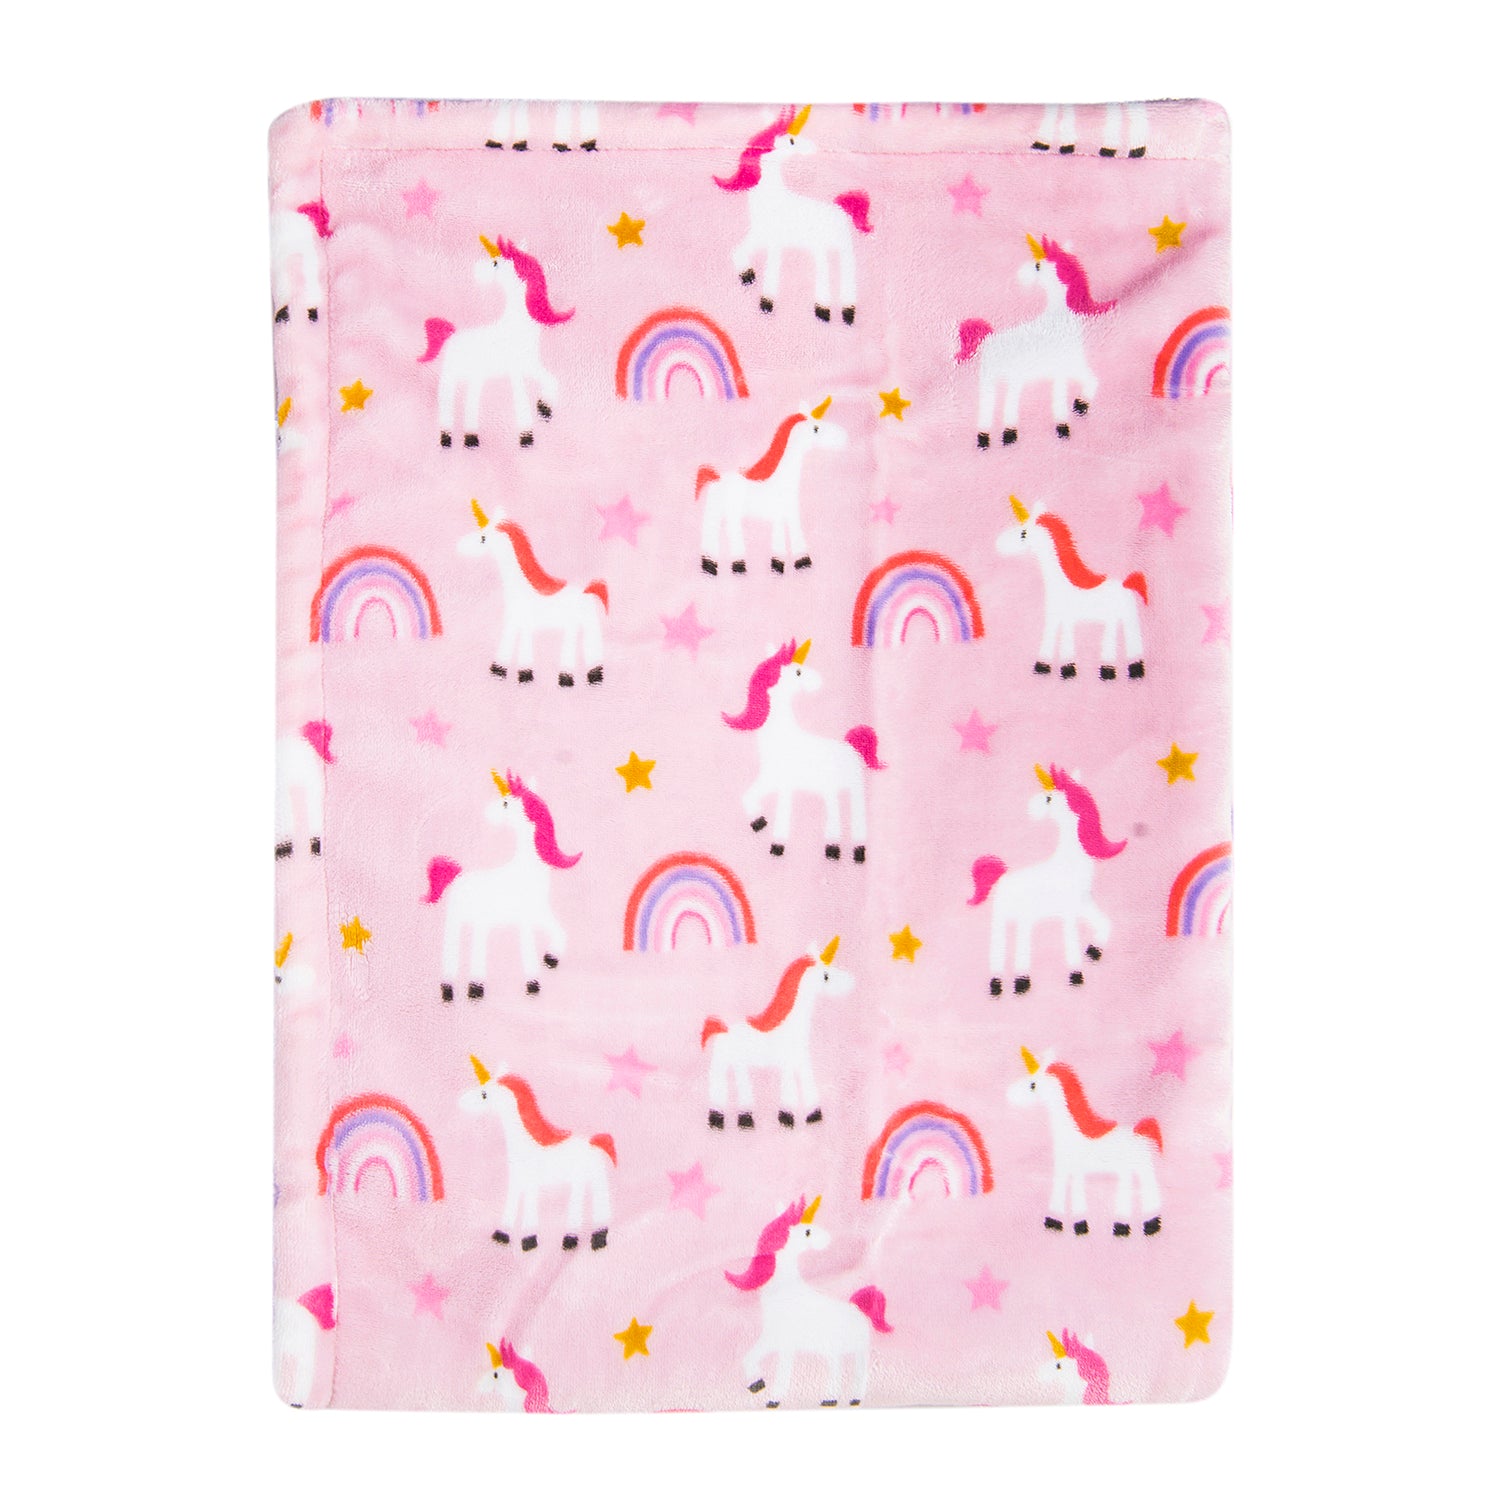 Whimsical Unicorn Soft Cozy Plush Blanket Pink - Baby Moo